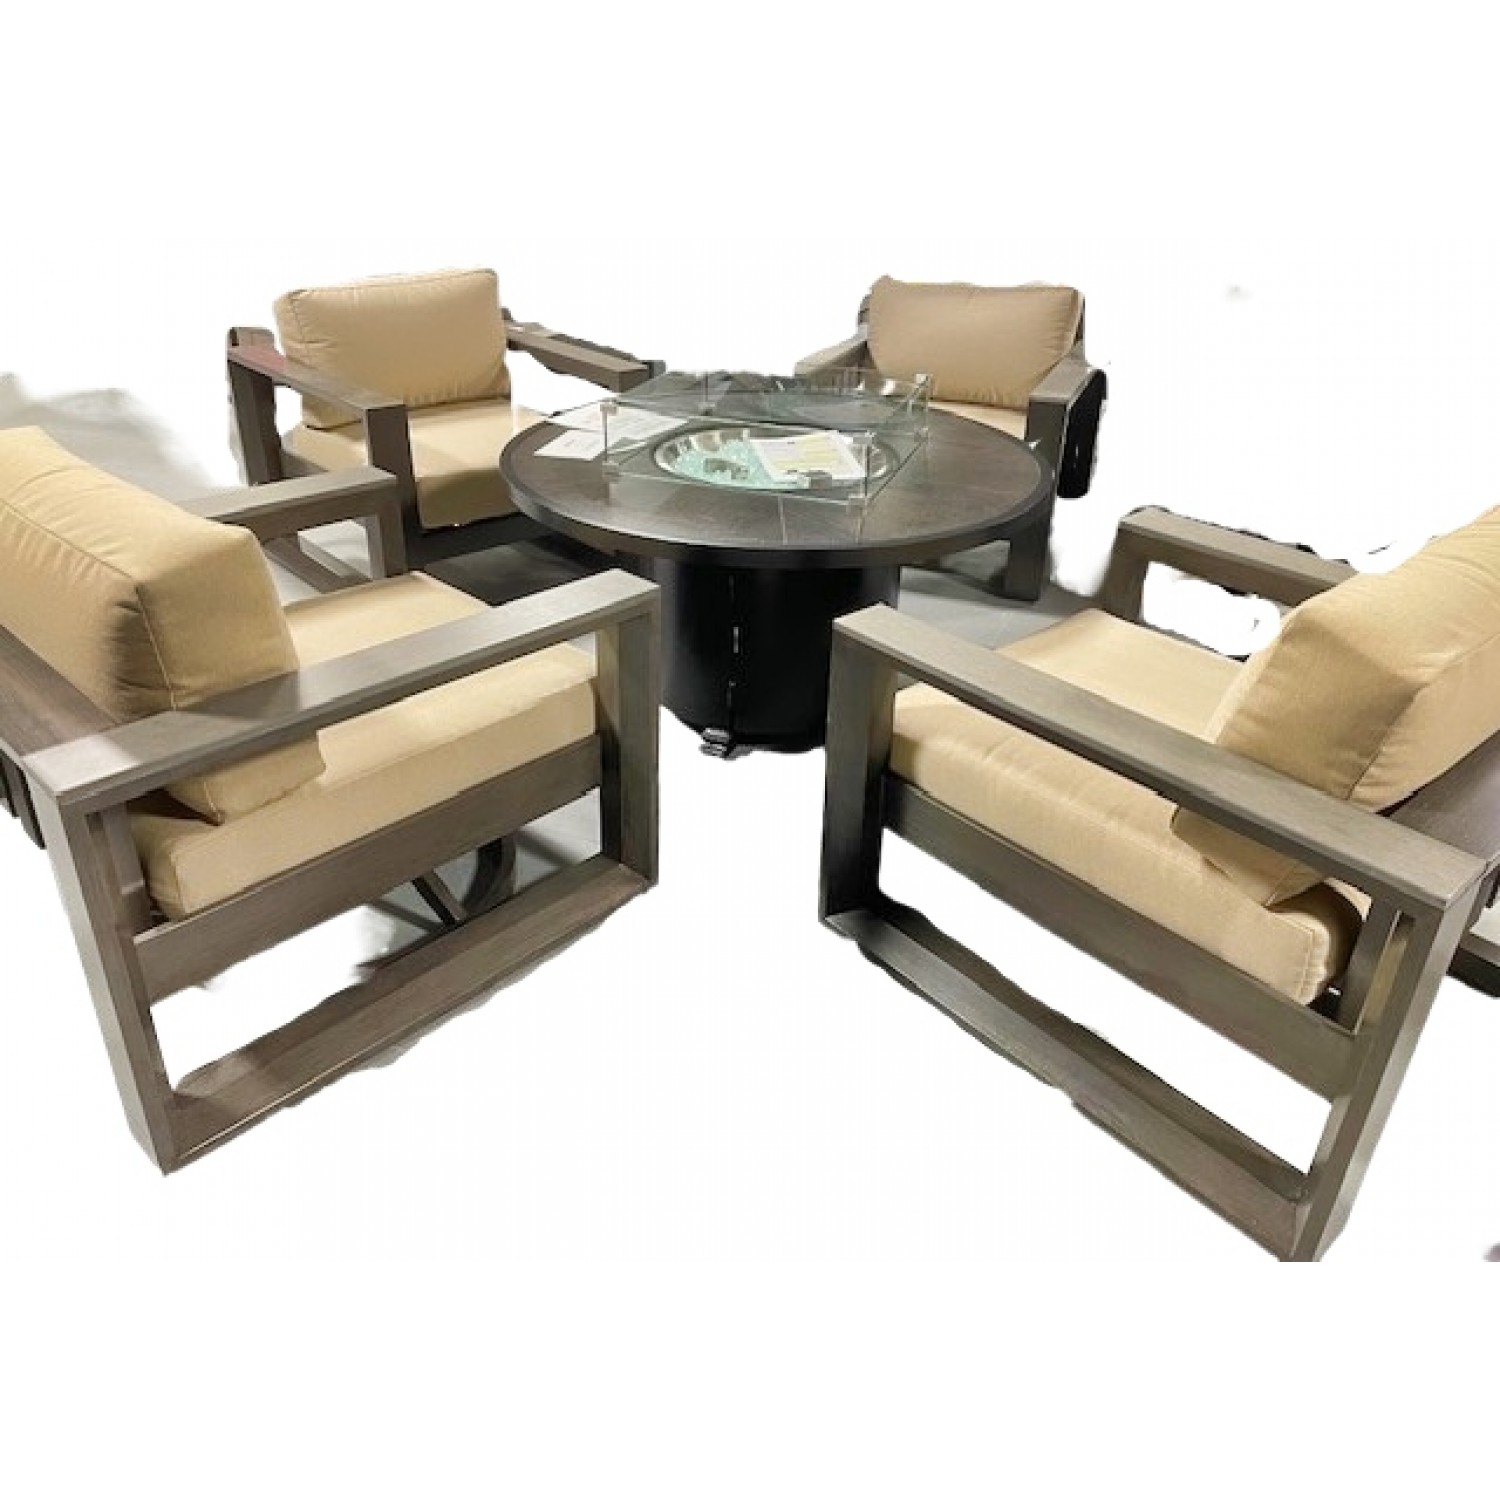 A Belvedere Outdoor 4 Piece Chair Set